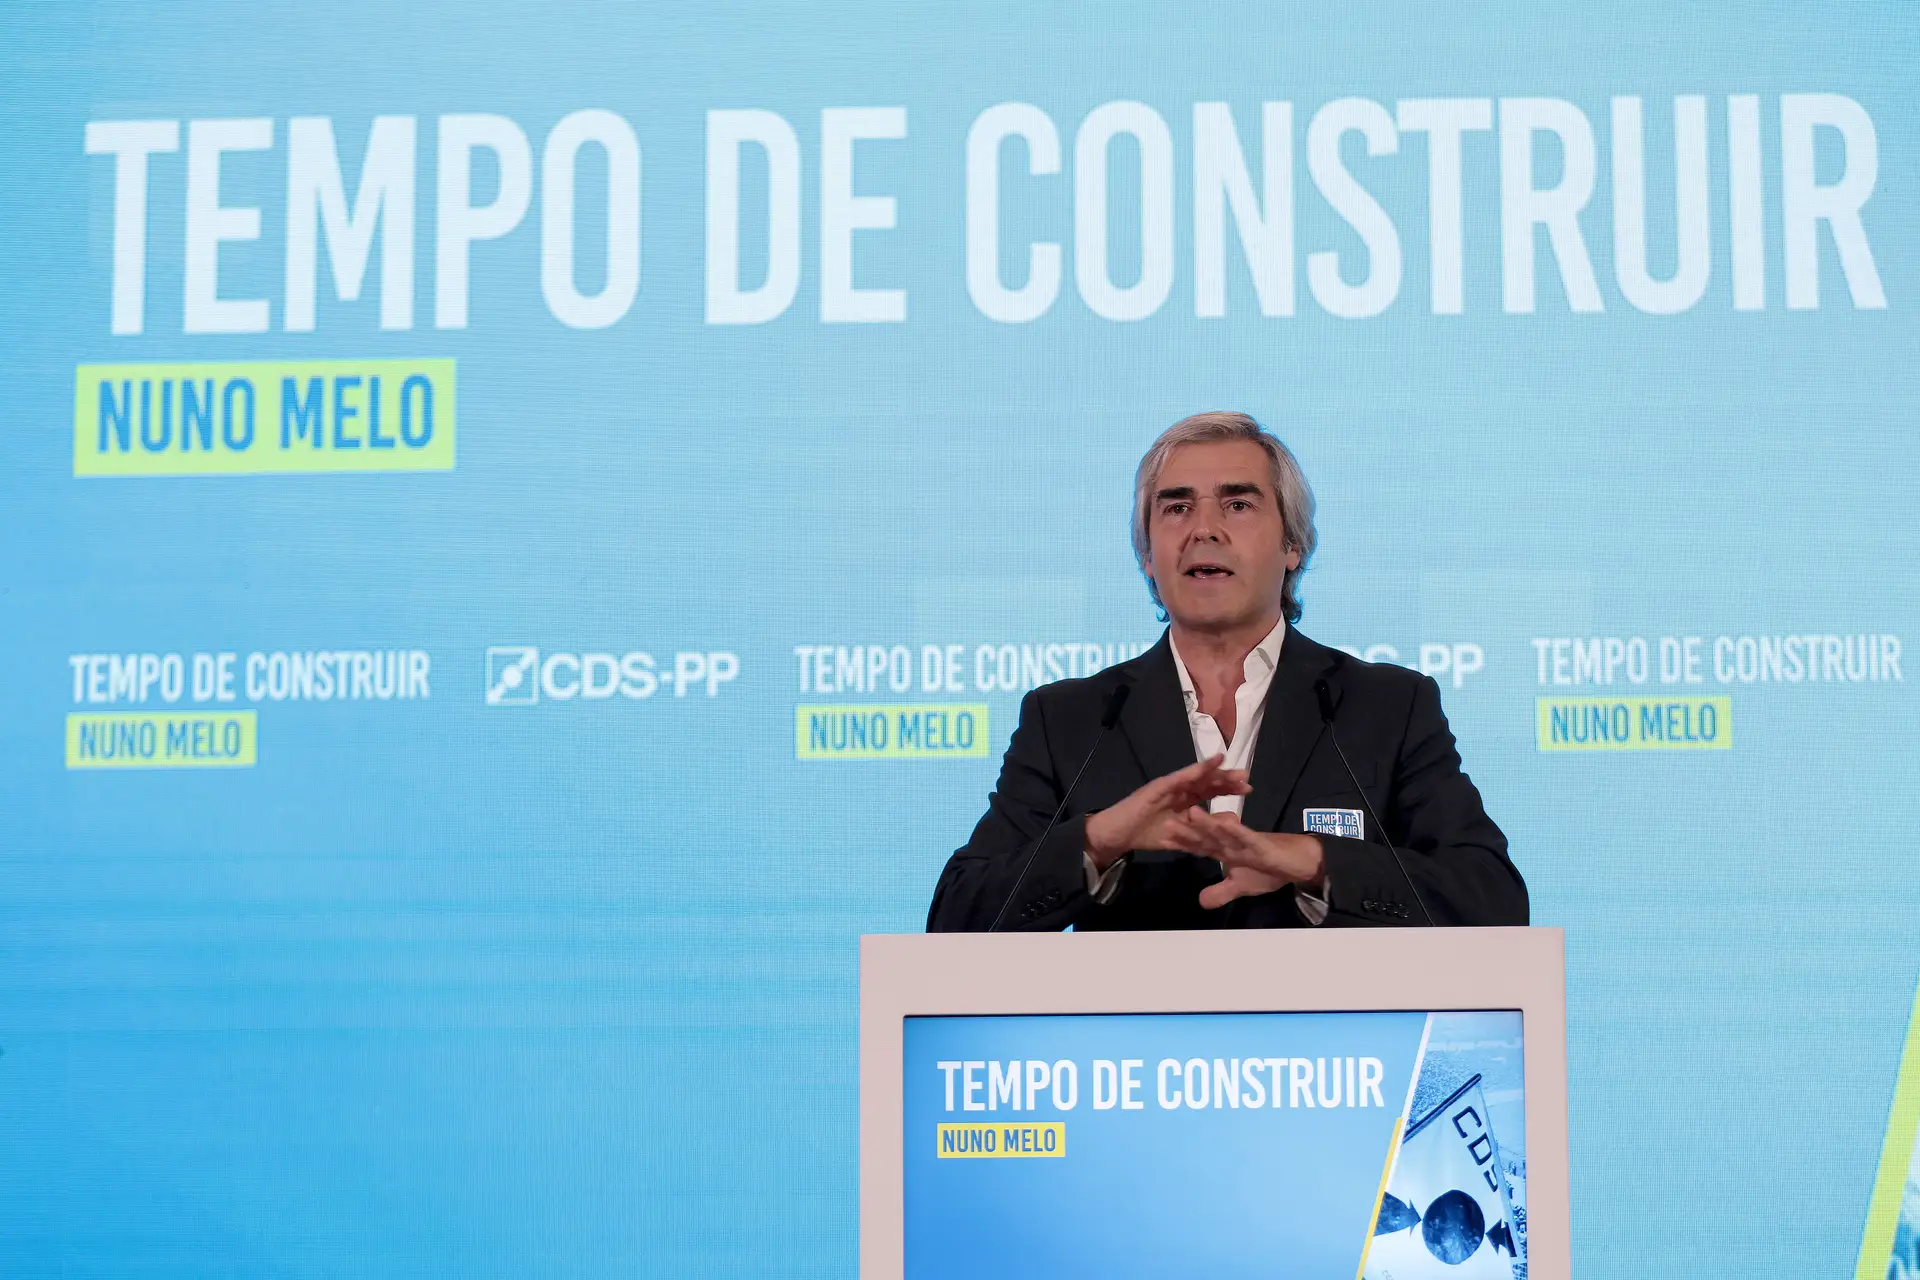 O Eurodeputado do CDS-PP, Nuno Melo, discursa durante a apresentação da sua candidatura à liderança do partido, no Palácio da Bolsa, na cidade do Porto.